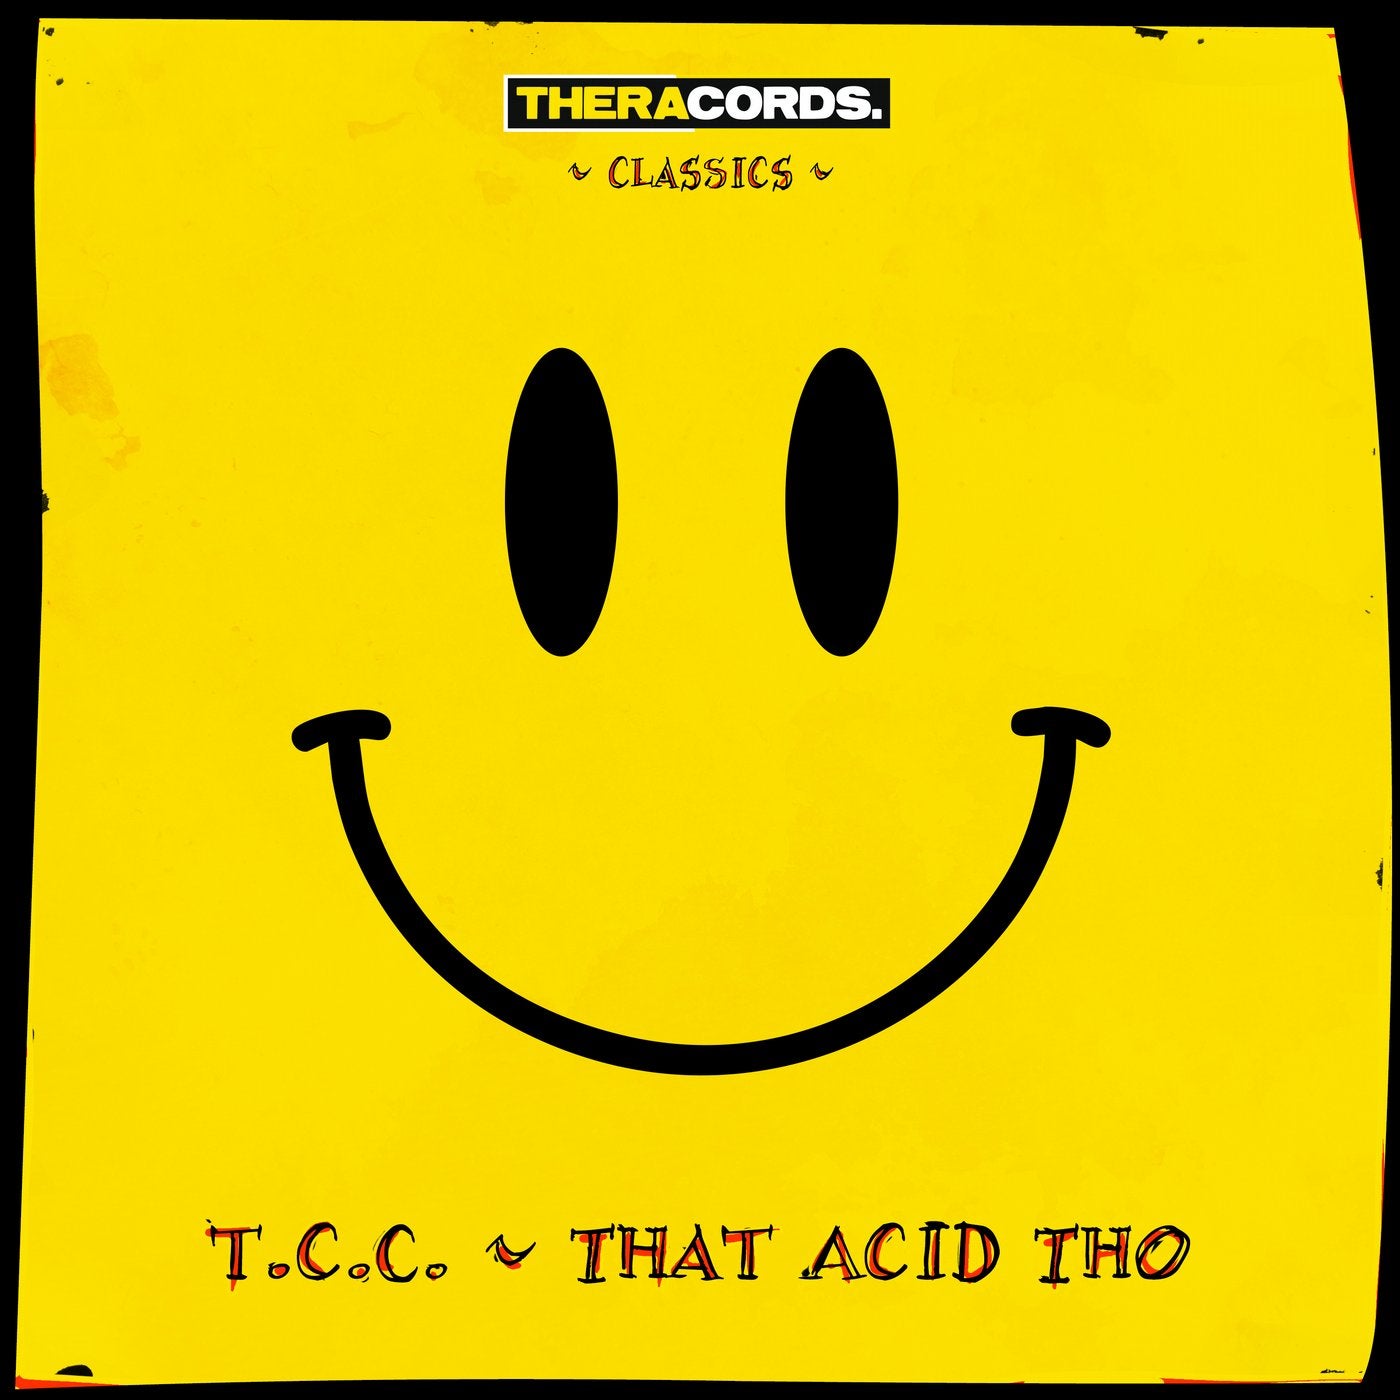 That Acid Tho